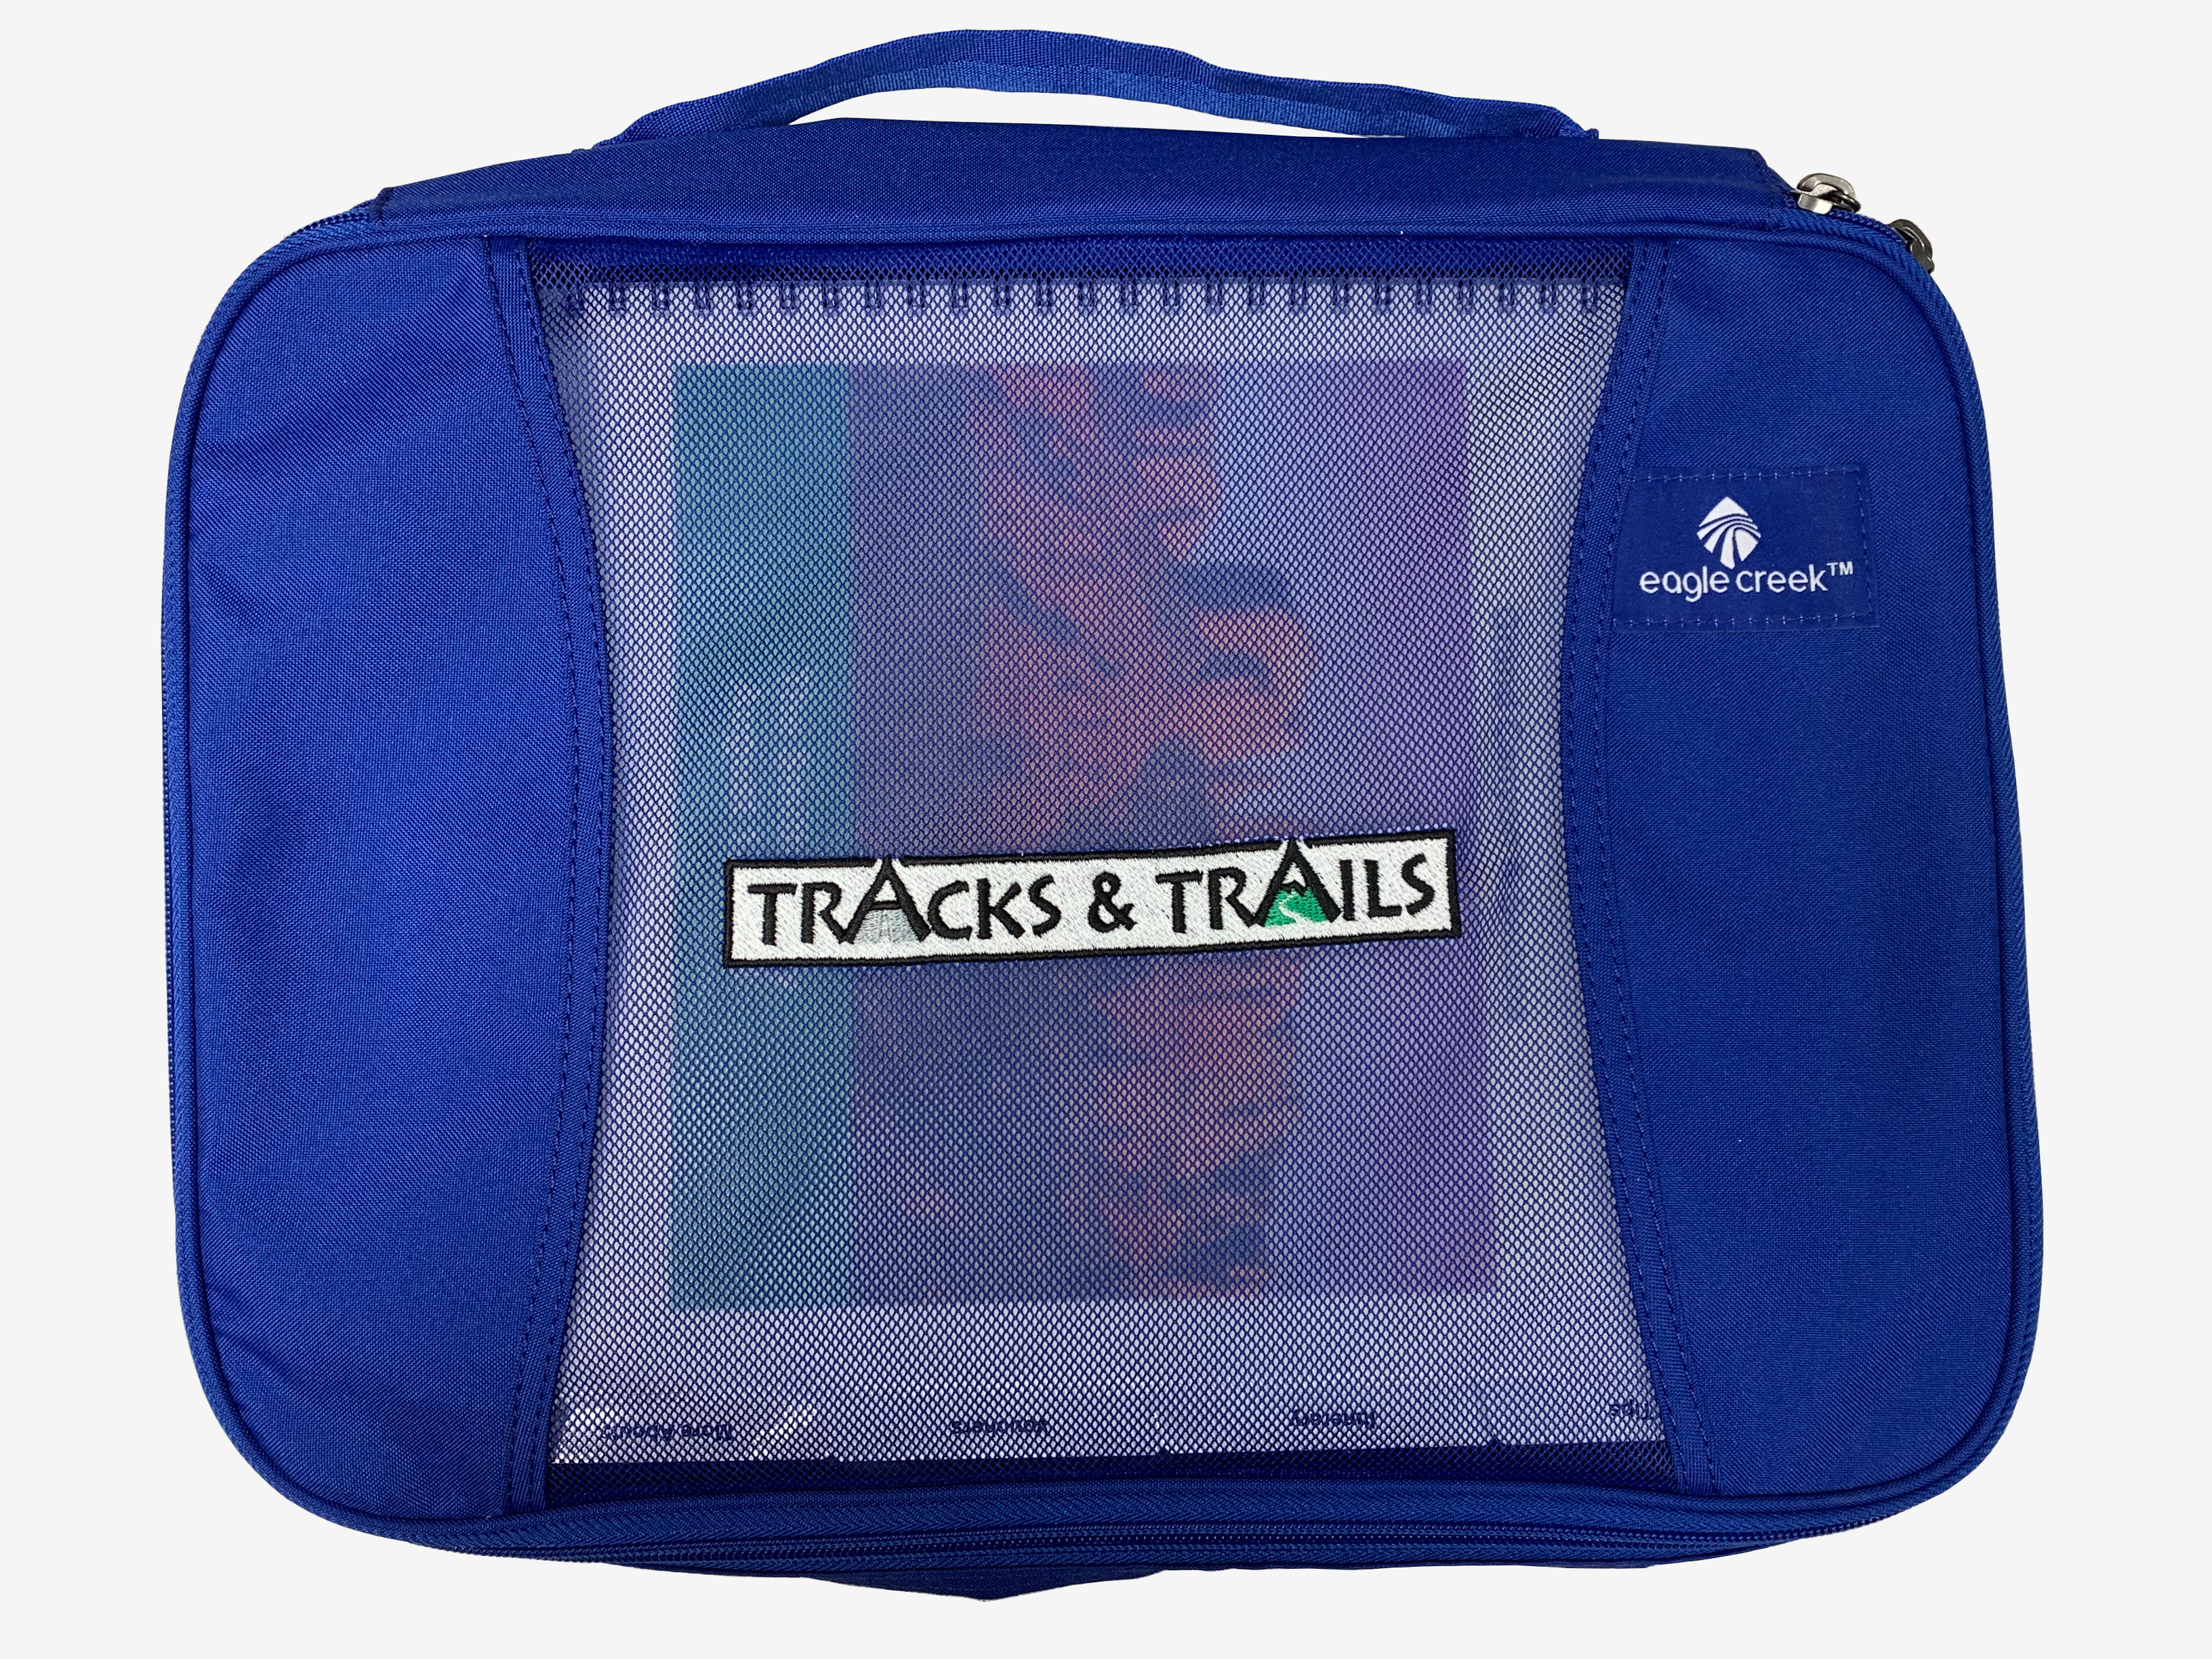 Tracks & Trails blue bag holding pamphlets